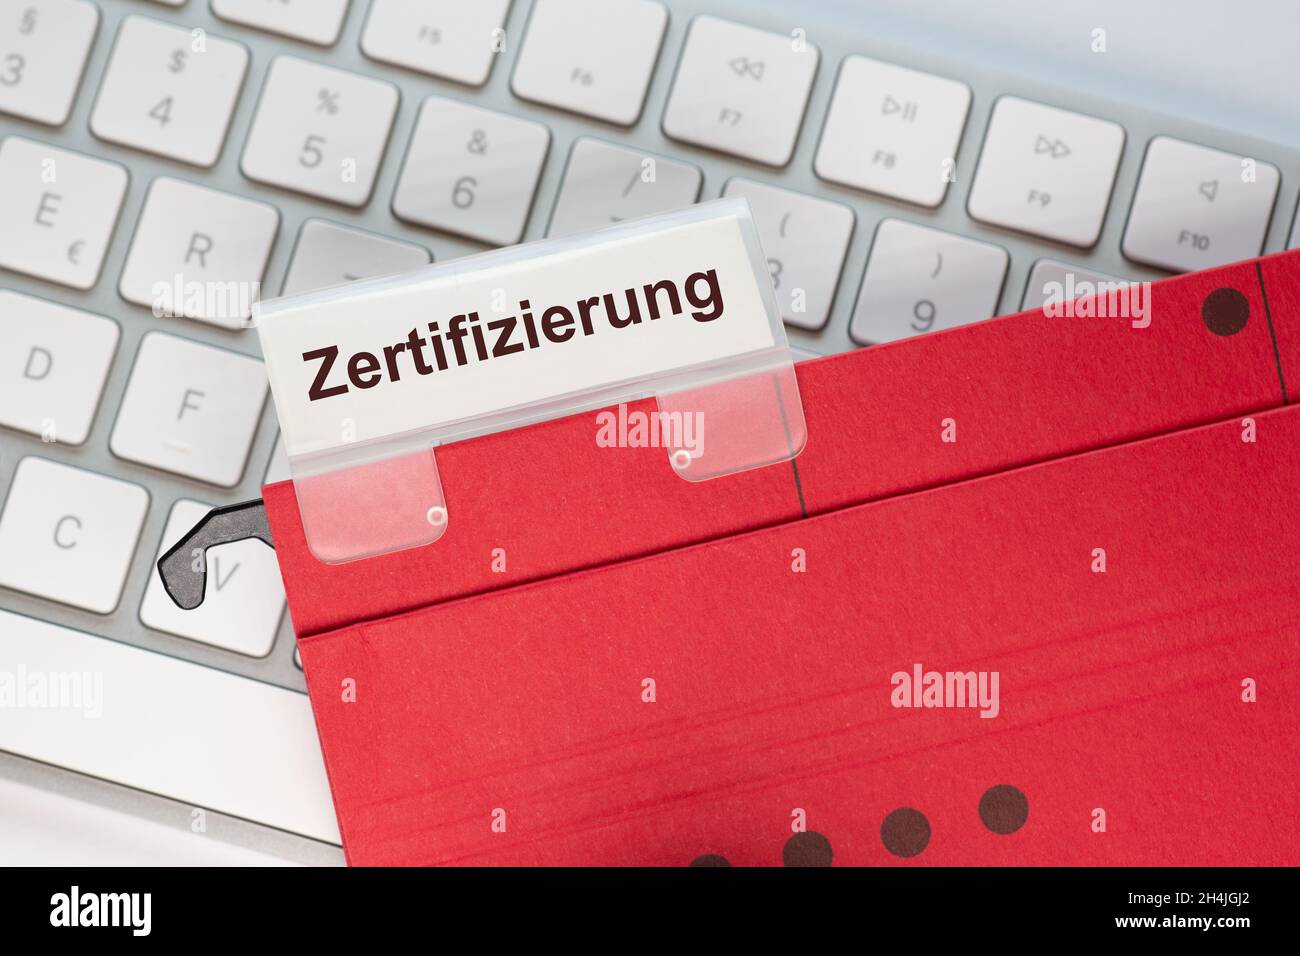 Das deutsche Wort für Zertifizierung ist auf dem Etikett einer roten Hängemappe zu sehen. Der Hängeordner befindet sich auf einer Computertastatur. Stockfoto